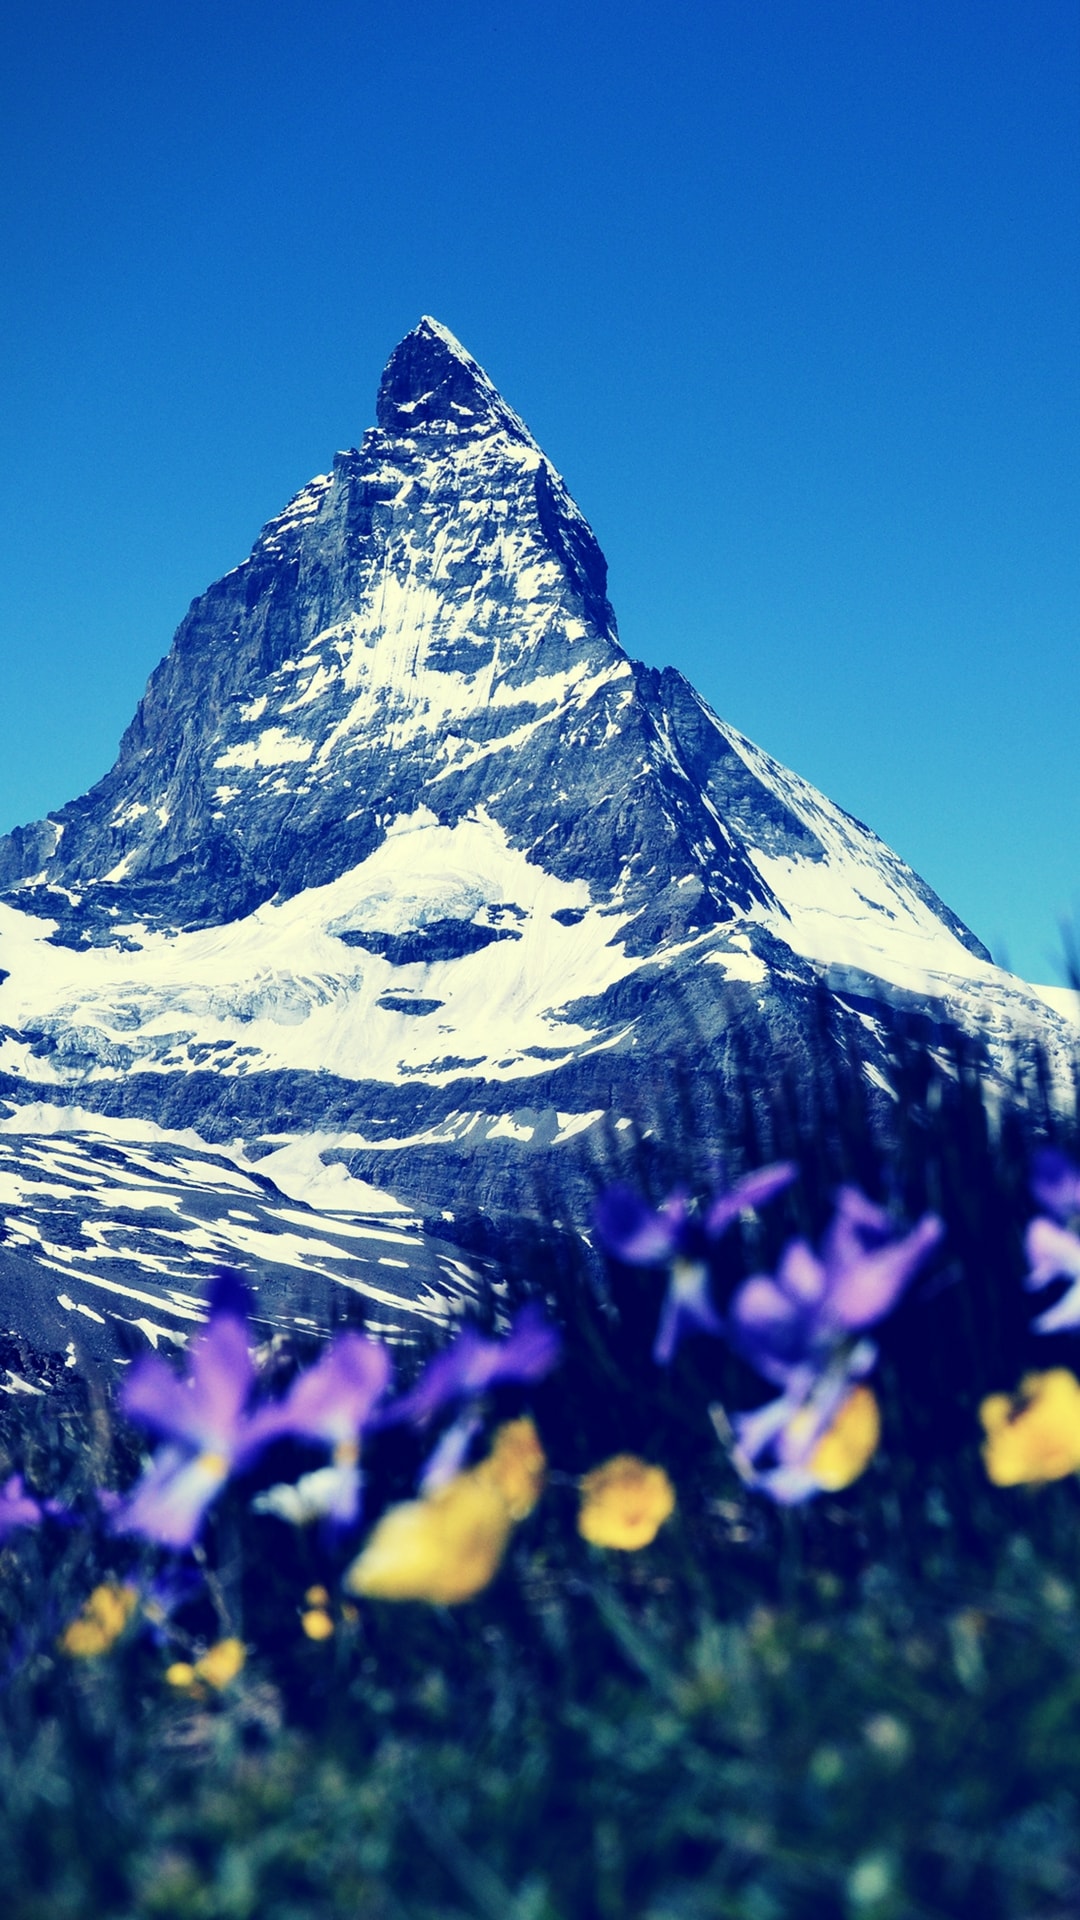 Best Wallpapers For Mobile Phones Download - Swiss Alps Wallpaper Iphone - HD Wallpaper 